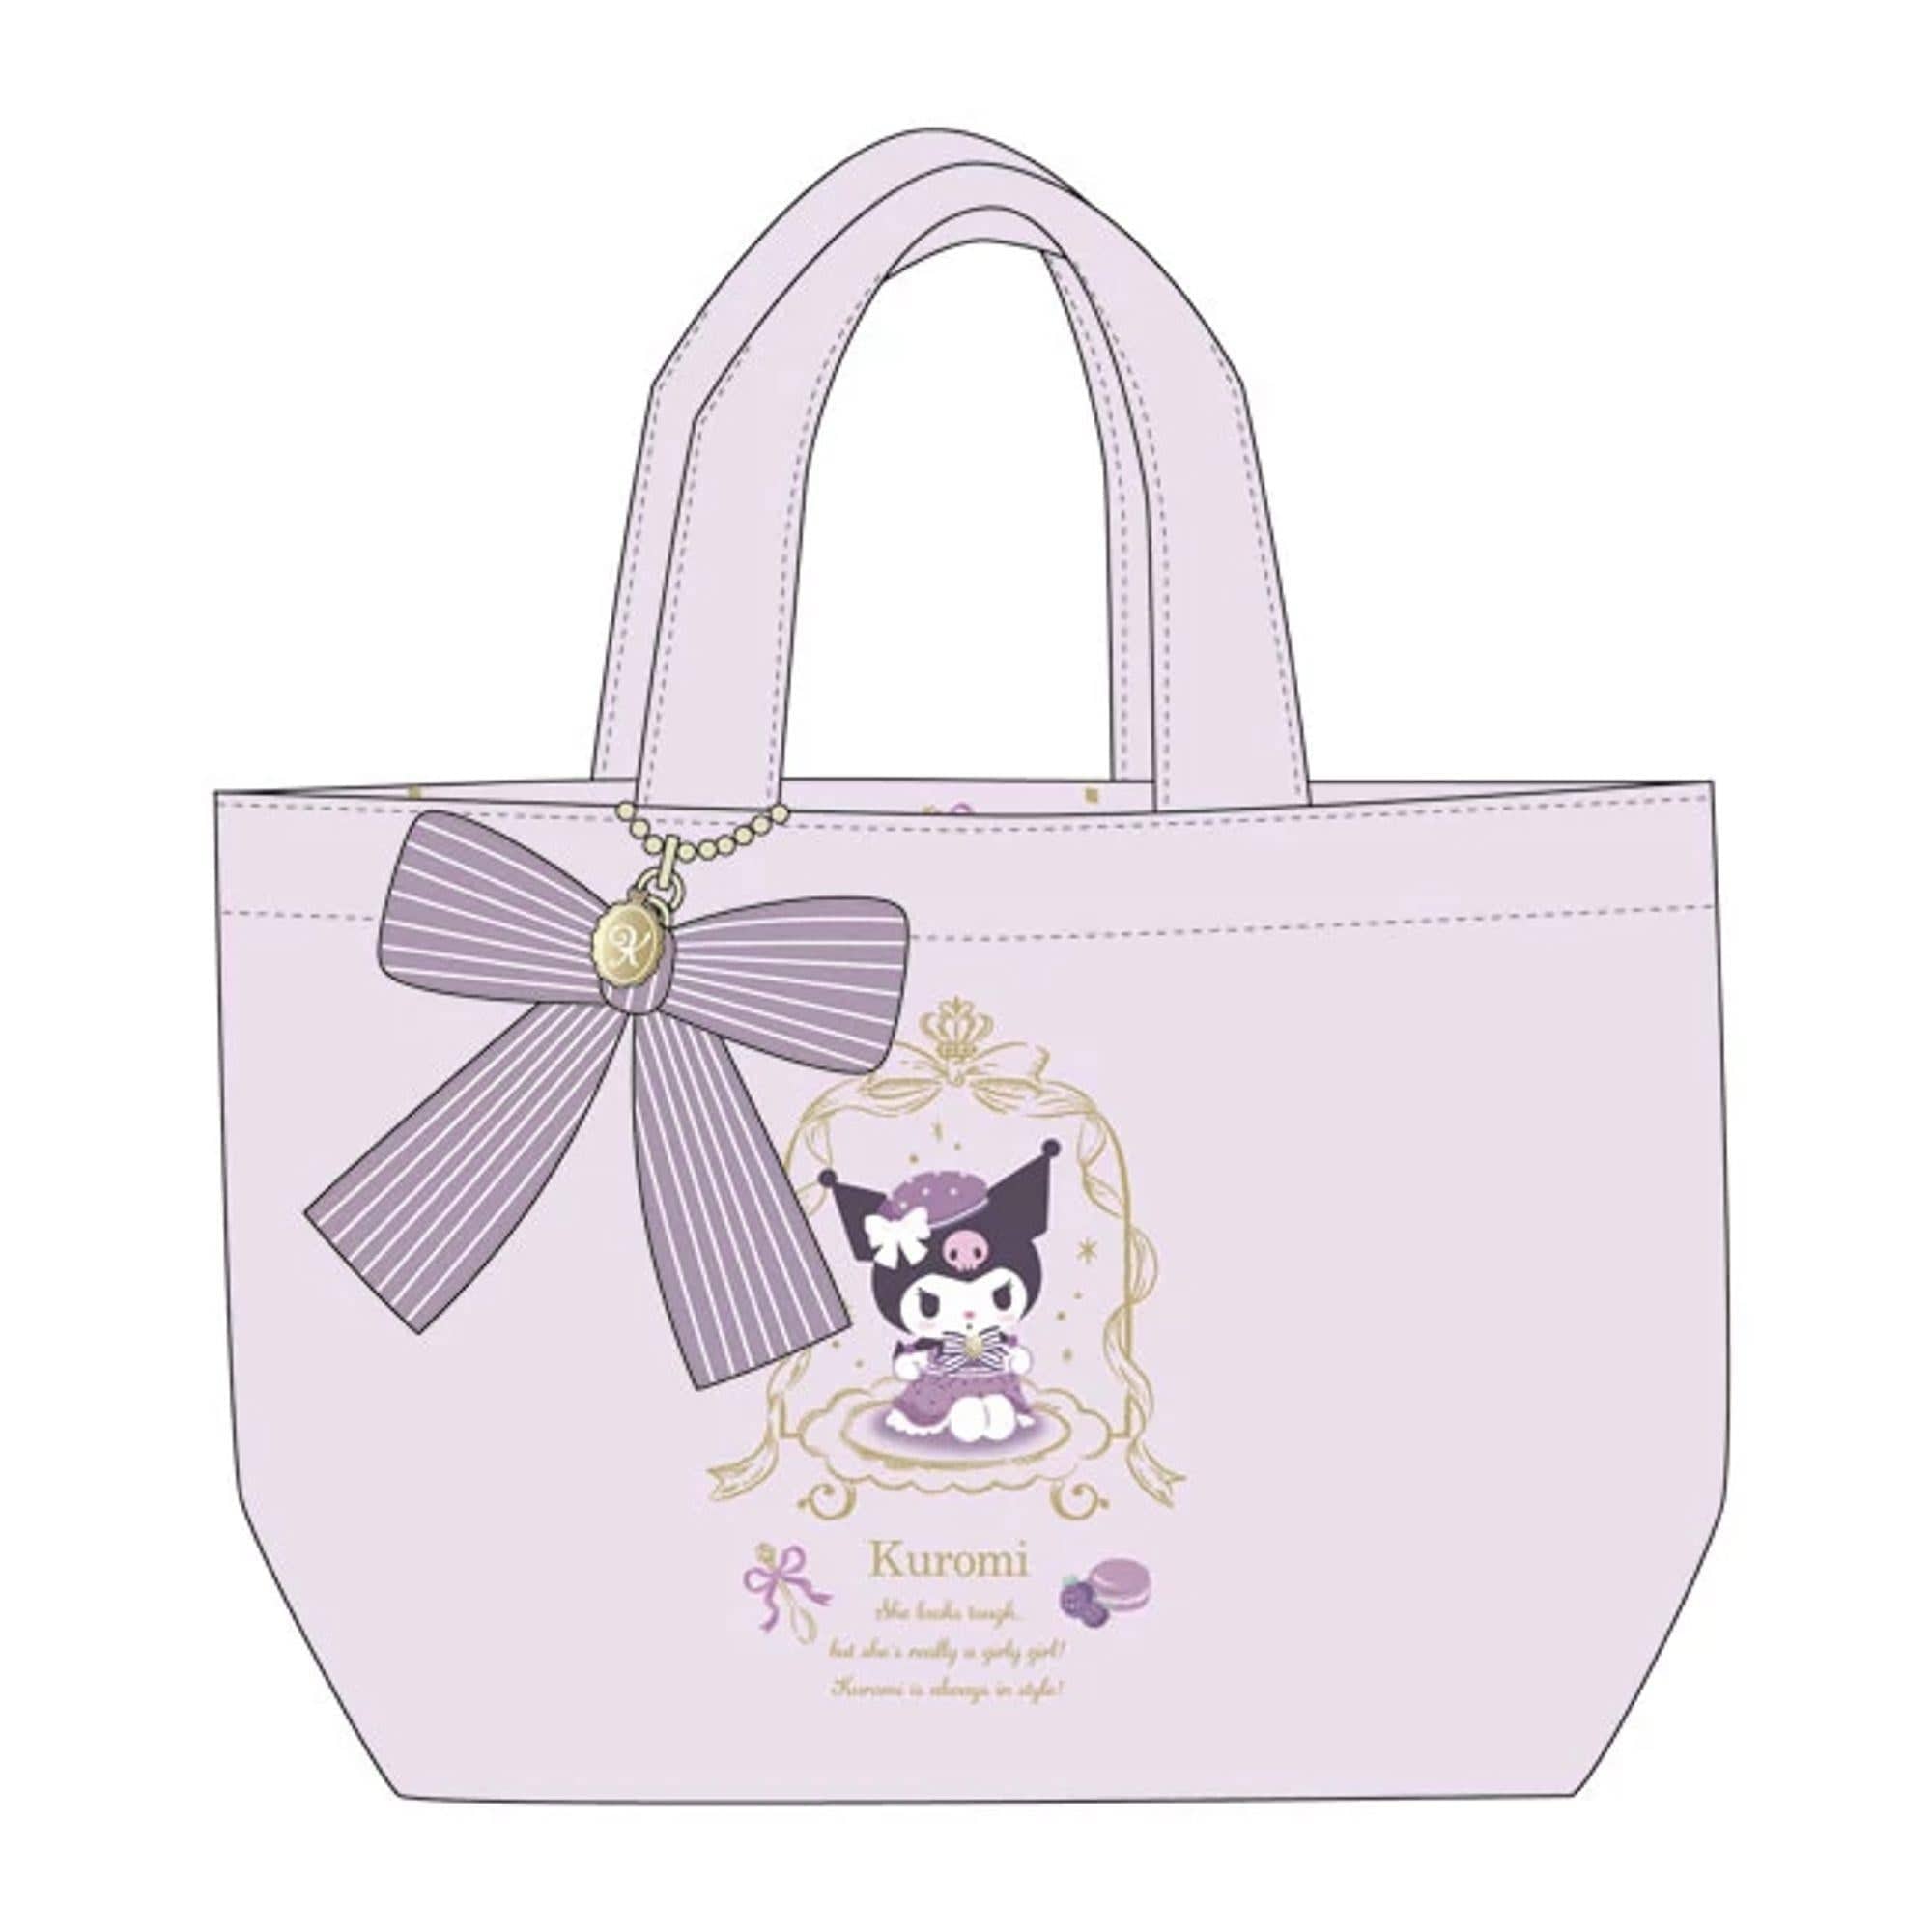 Enesco Kuromi Tearoom Hand Bag Kawaii Gifts 4550337799994